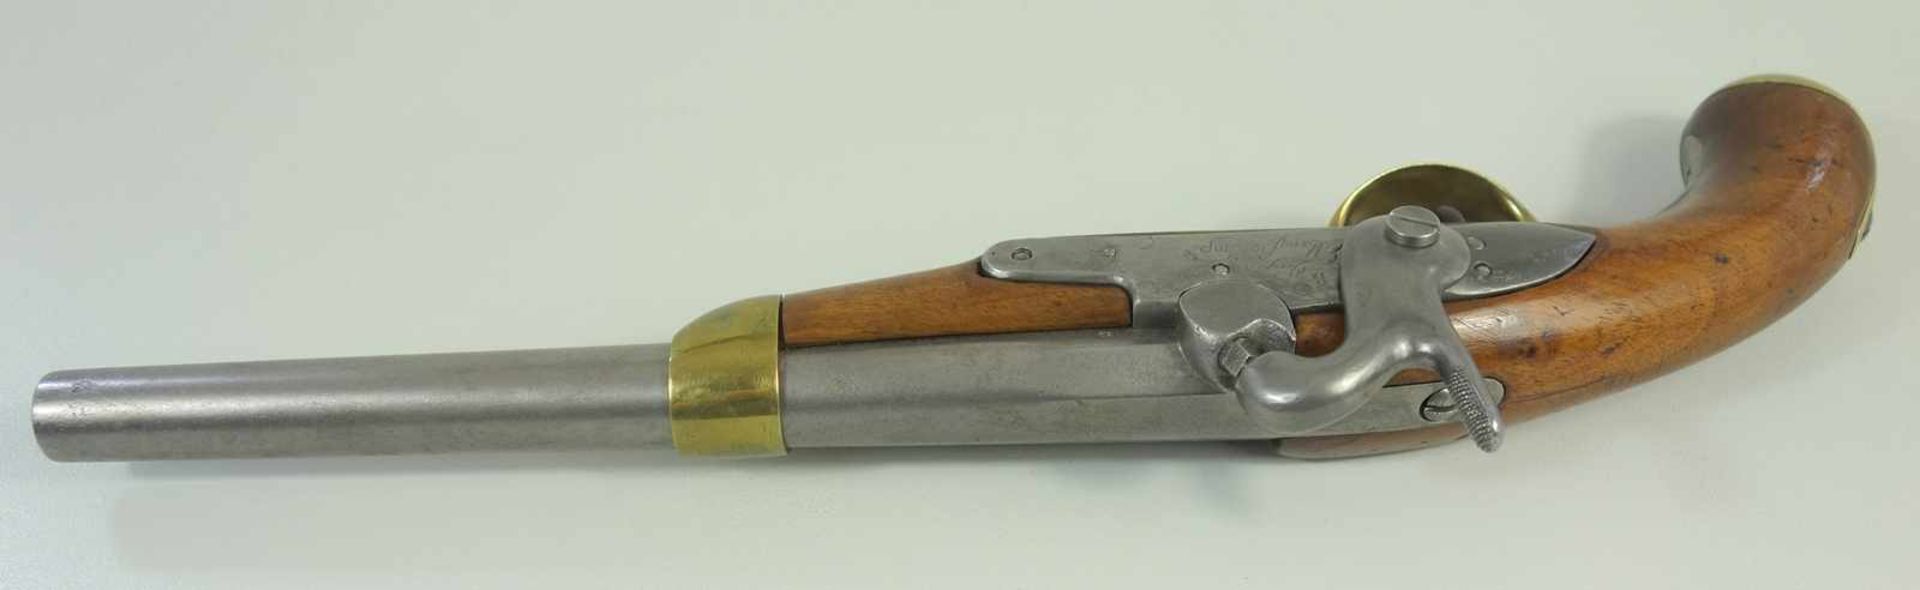 Perkussionspistole, Manufacture Imperiale Liége, Belgien, Kal. 17.6mm, Lauflänge 277mm, gesamt 445m, - Image 2 of 4